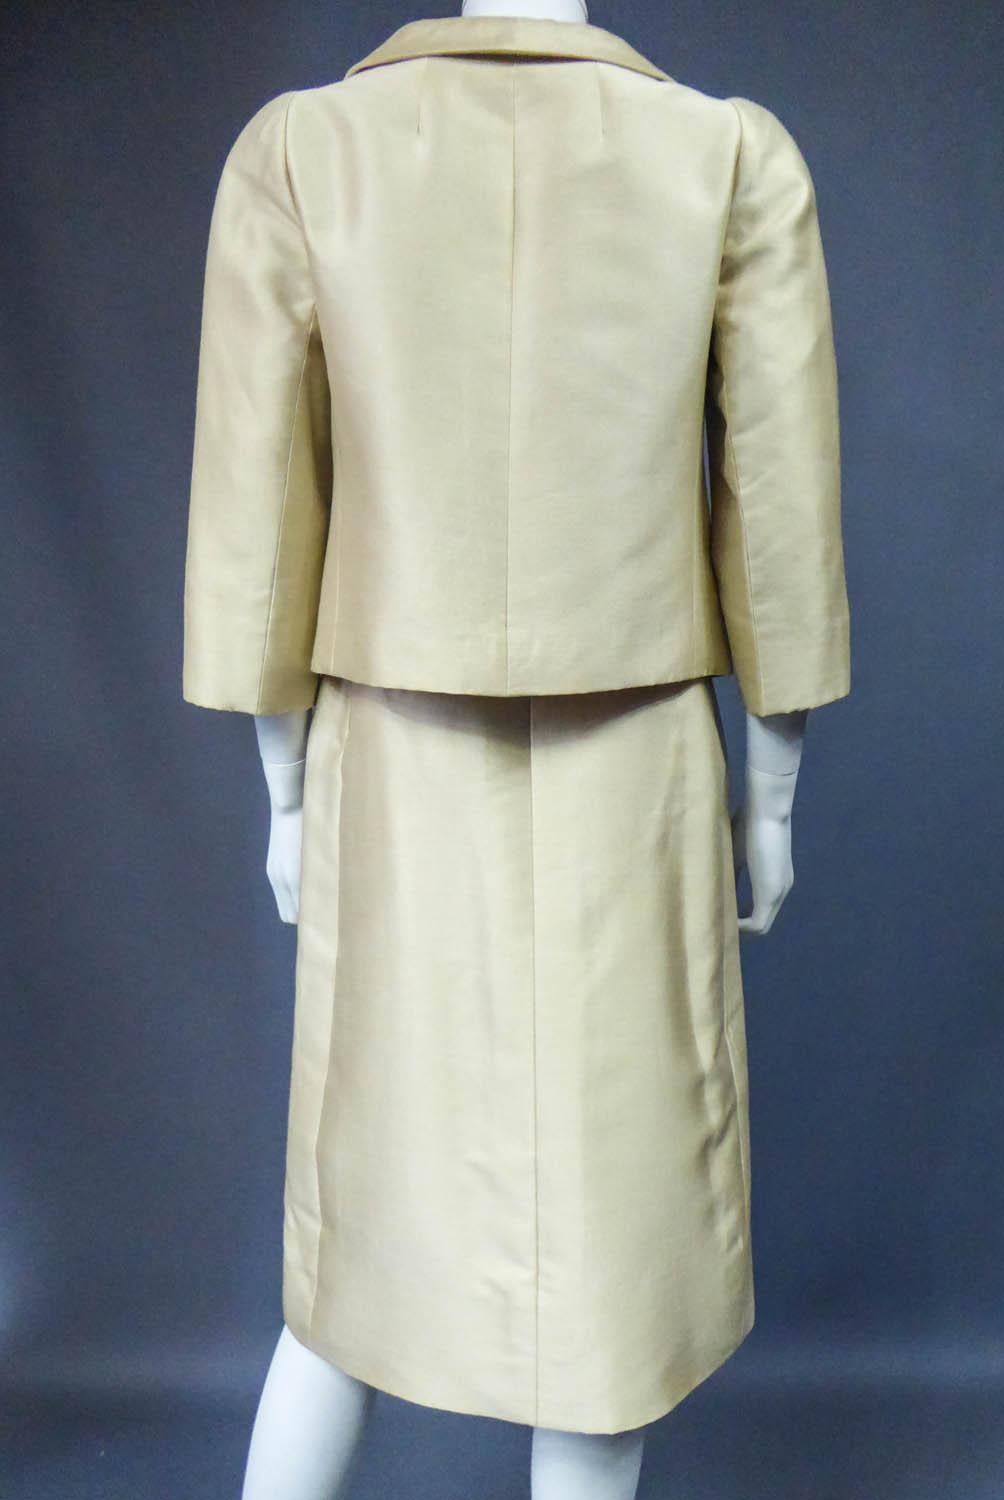 Christian Dior/Marc Bohan Skirt Suit Set numbered 40314 / 41778 Circa 1962 5